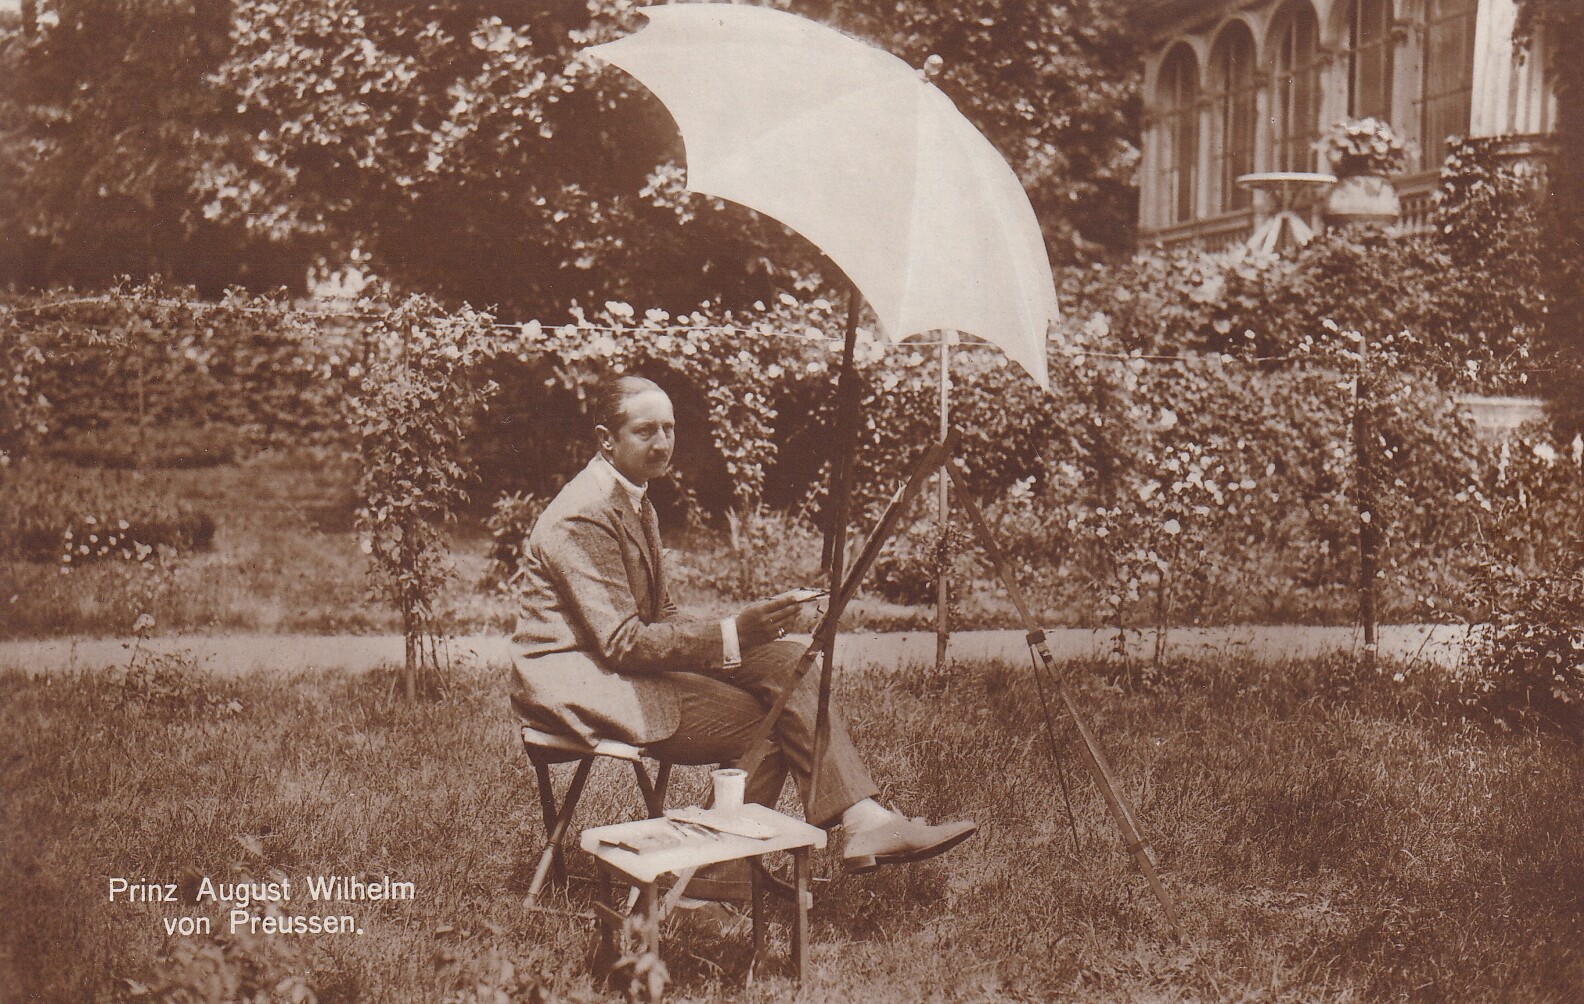 Bildpostkarte mit Foto von August Wilhelm Prinz von Preußen (1887-1949) beim Malen im Garten, 1922 (Schloß Wernigerode GmbH RR-F)